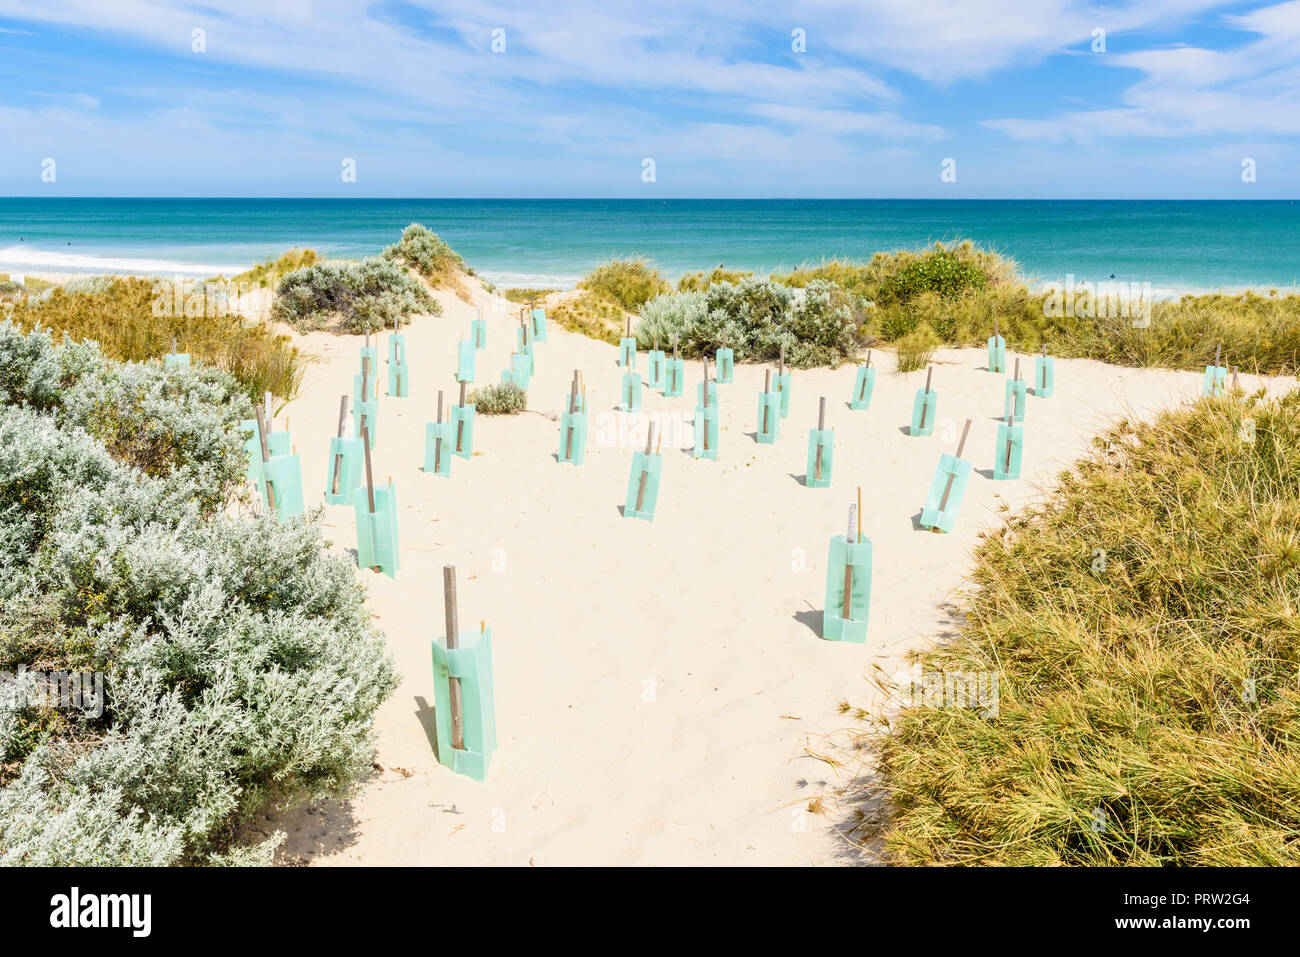 La stabilisation des dunes par la protection permanente de nouvelles plantes à l'aide de manchons forestiers en plastique dans un écosystème côtier dans l'ouest de l'Australie Banque D'Images